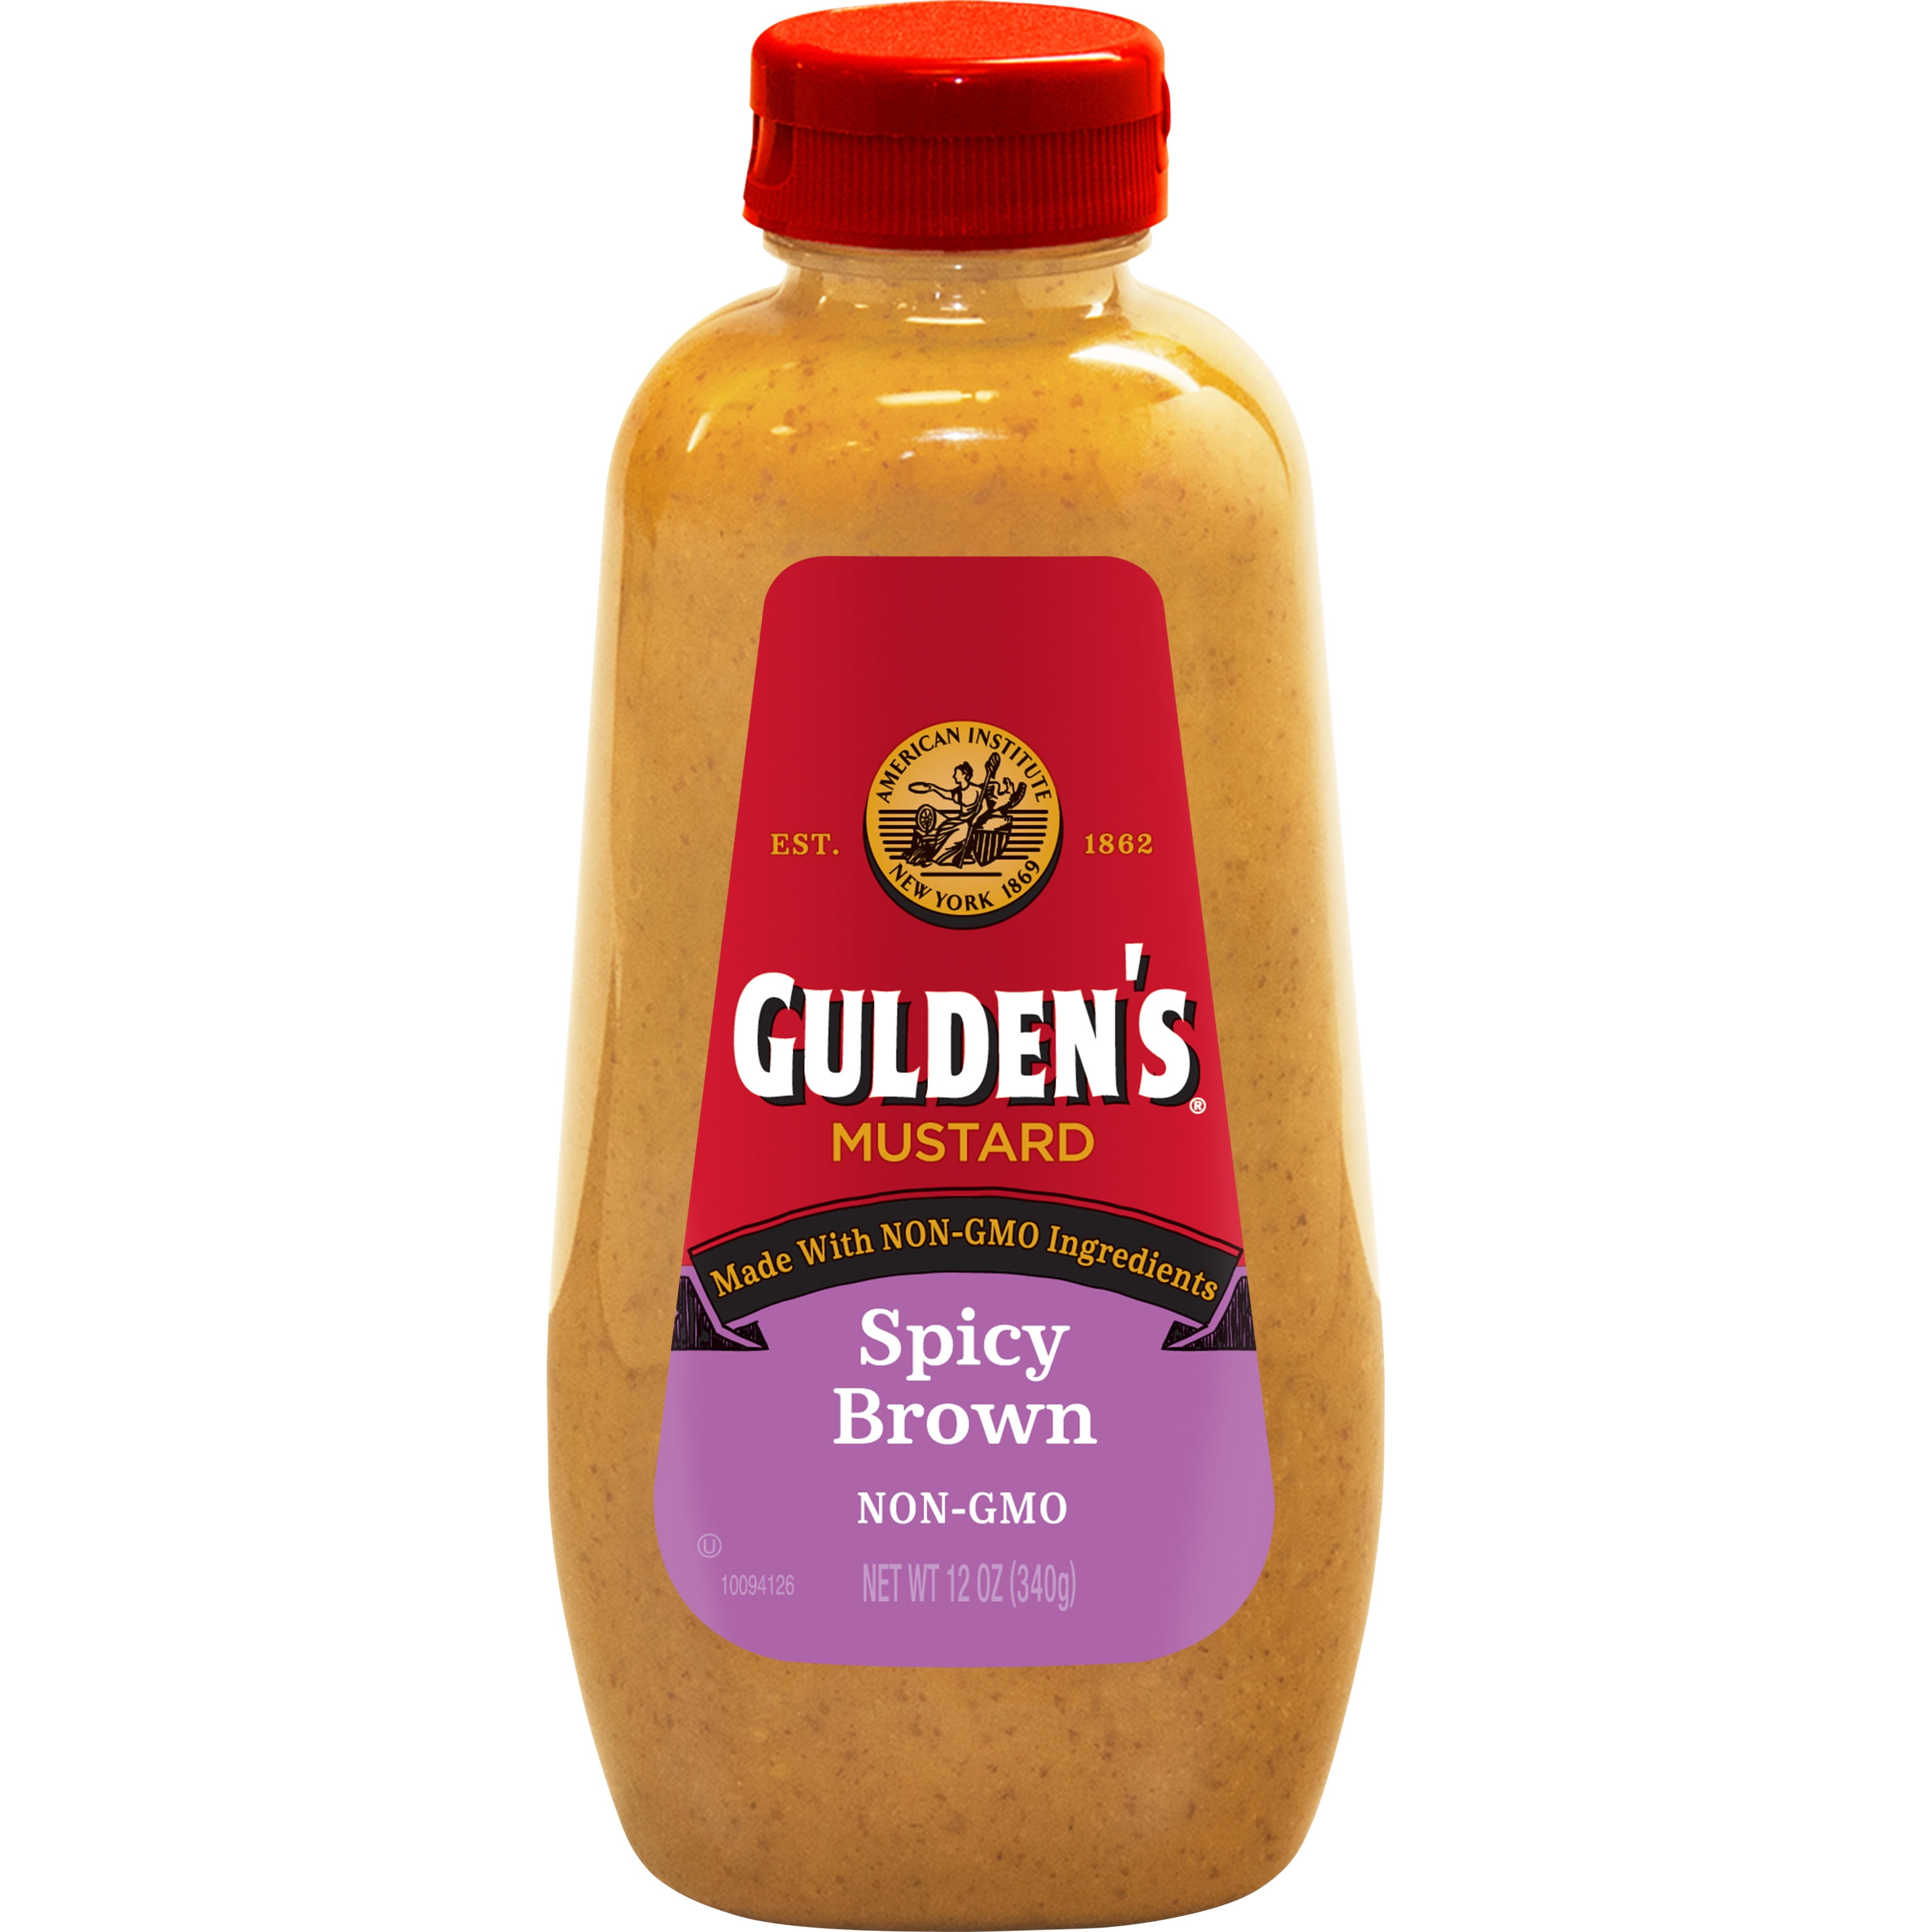 GULDENS Spicy Brown Mustard Squeeze Bottle 12 oz. - Walmart.com ...